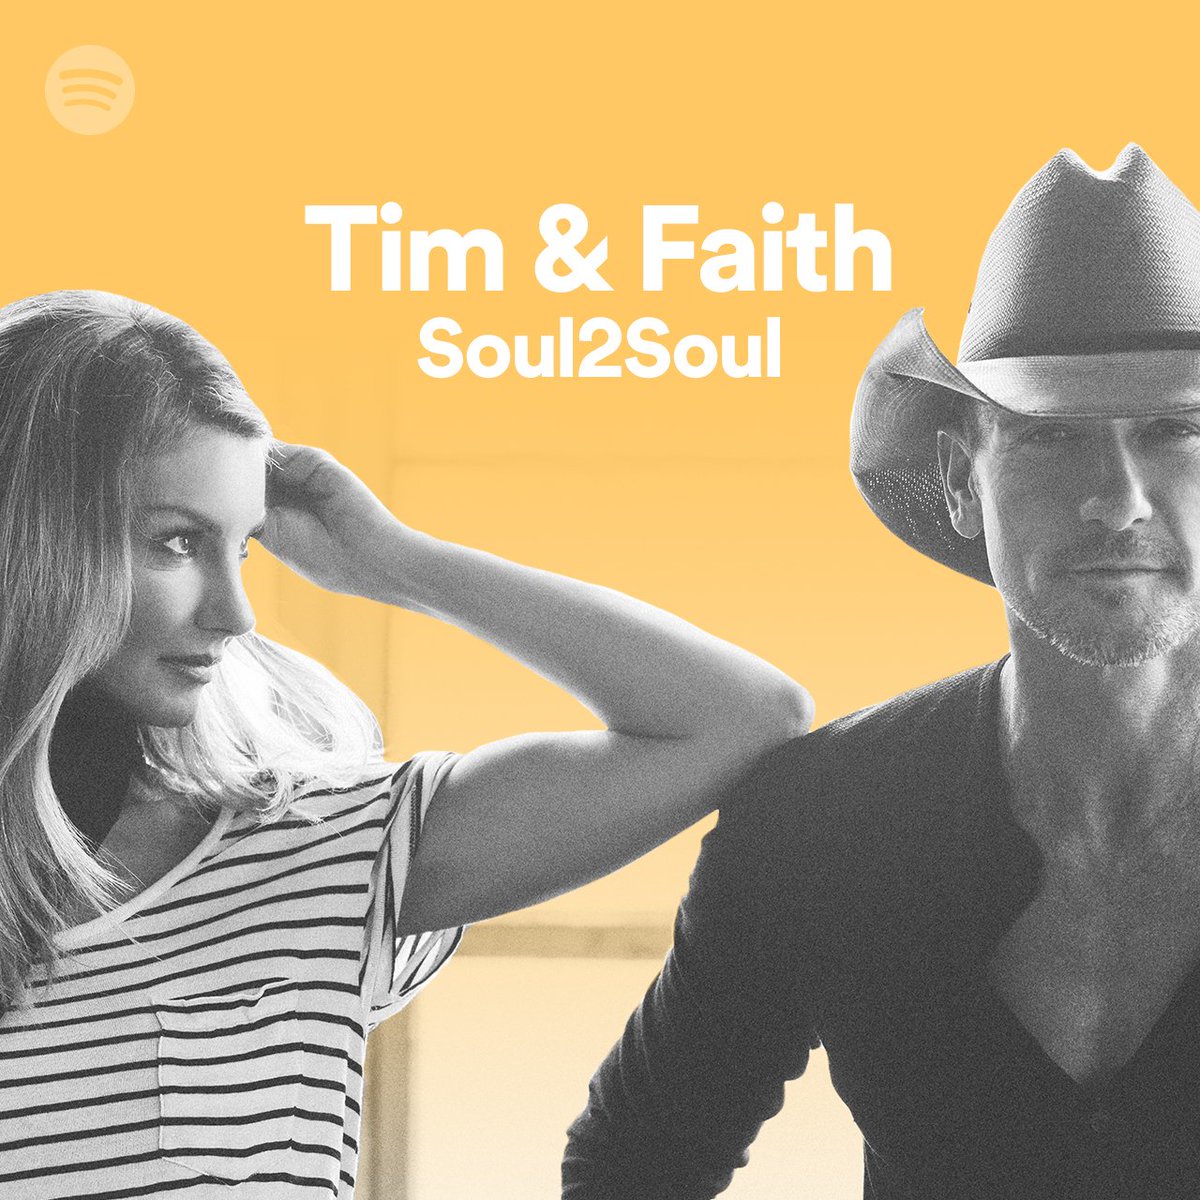 Follow + stream the official @Spotify #soul2soul playlist now! https://t.co/FE1EWliKOd https://t.co/ERKlB1Jj7K